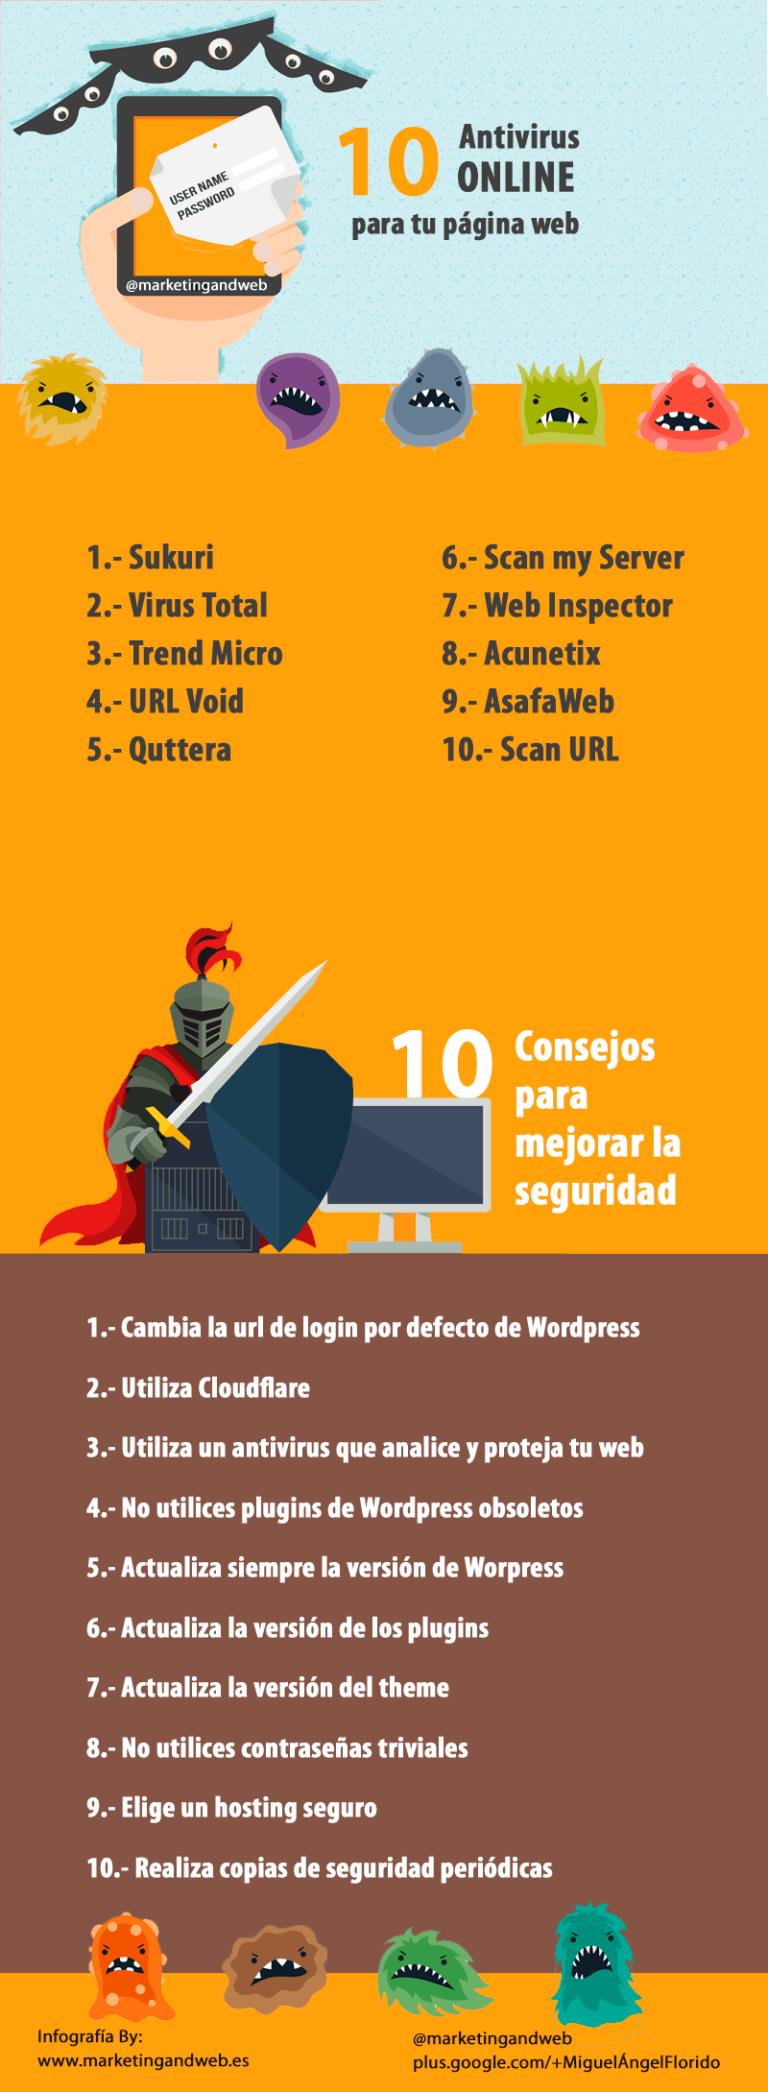 Infografia - 10 antivirus online para tu web y 10 consejos de seguridad #infografia #infographic - TICs y Formación